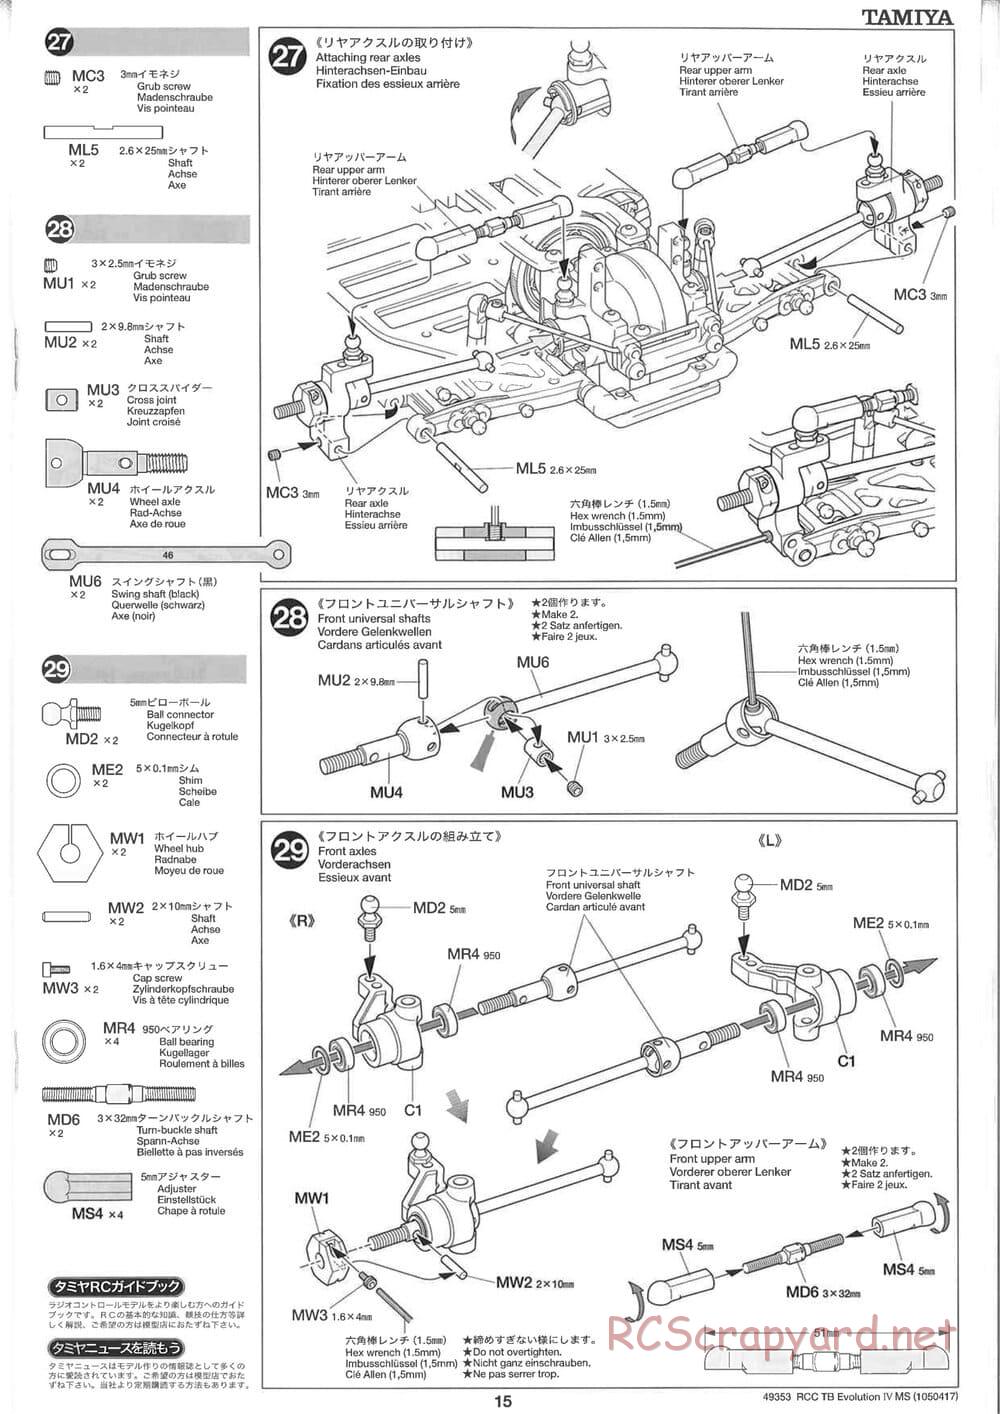 Tamiya - TB Evolution IV MS Chassis - Manual - Page 15